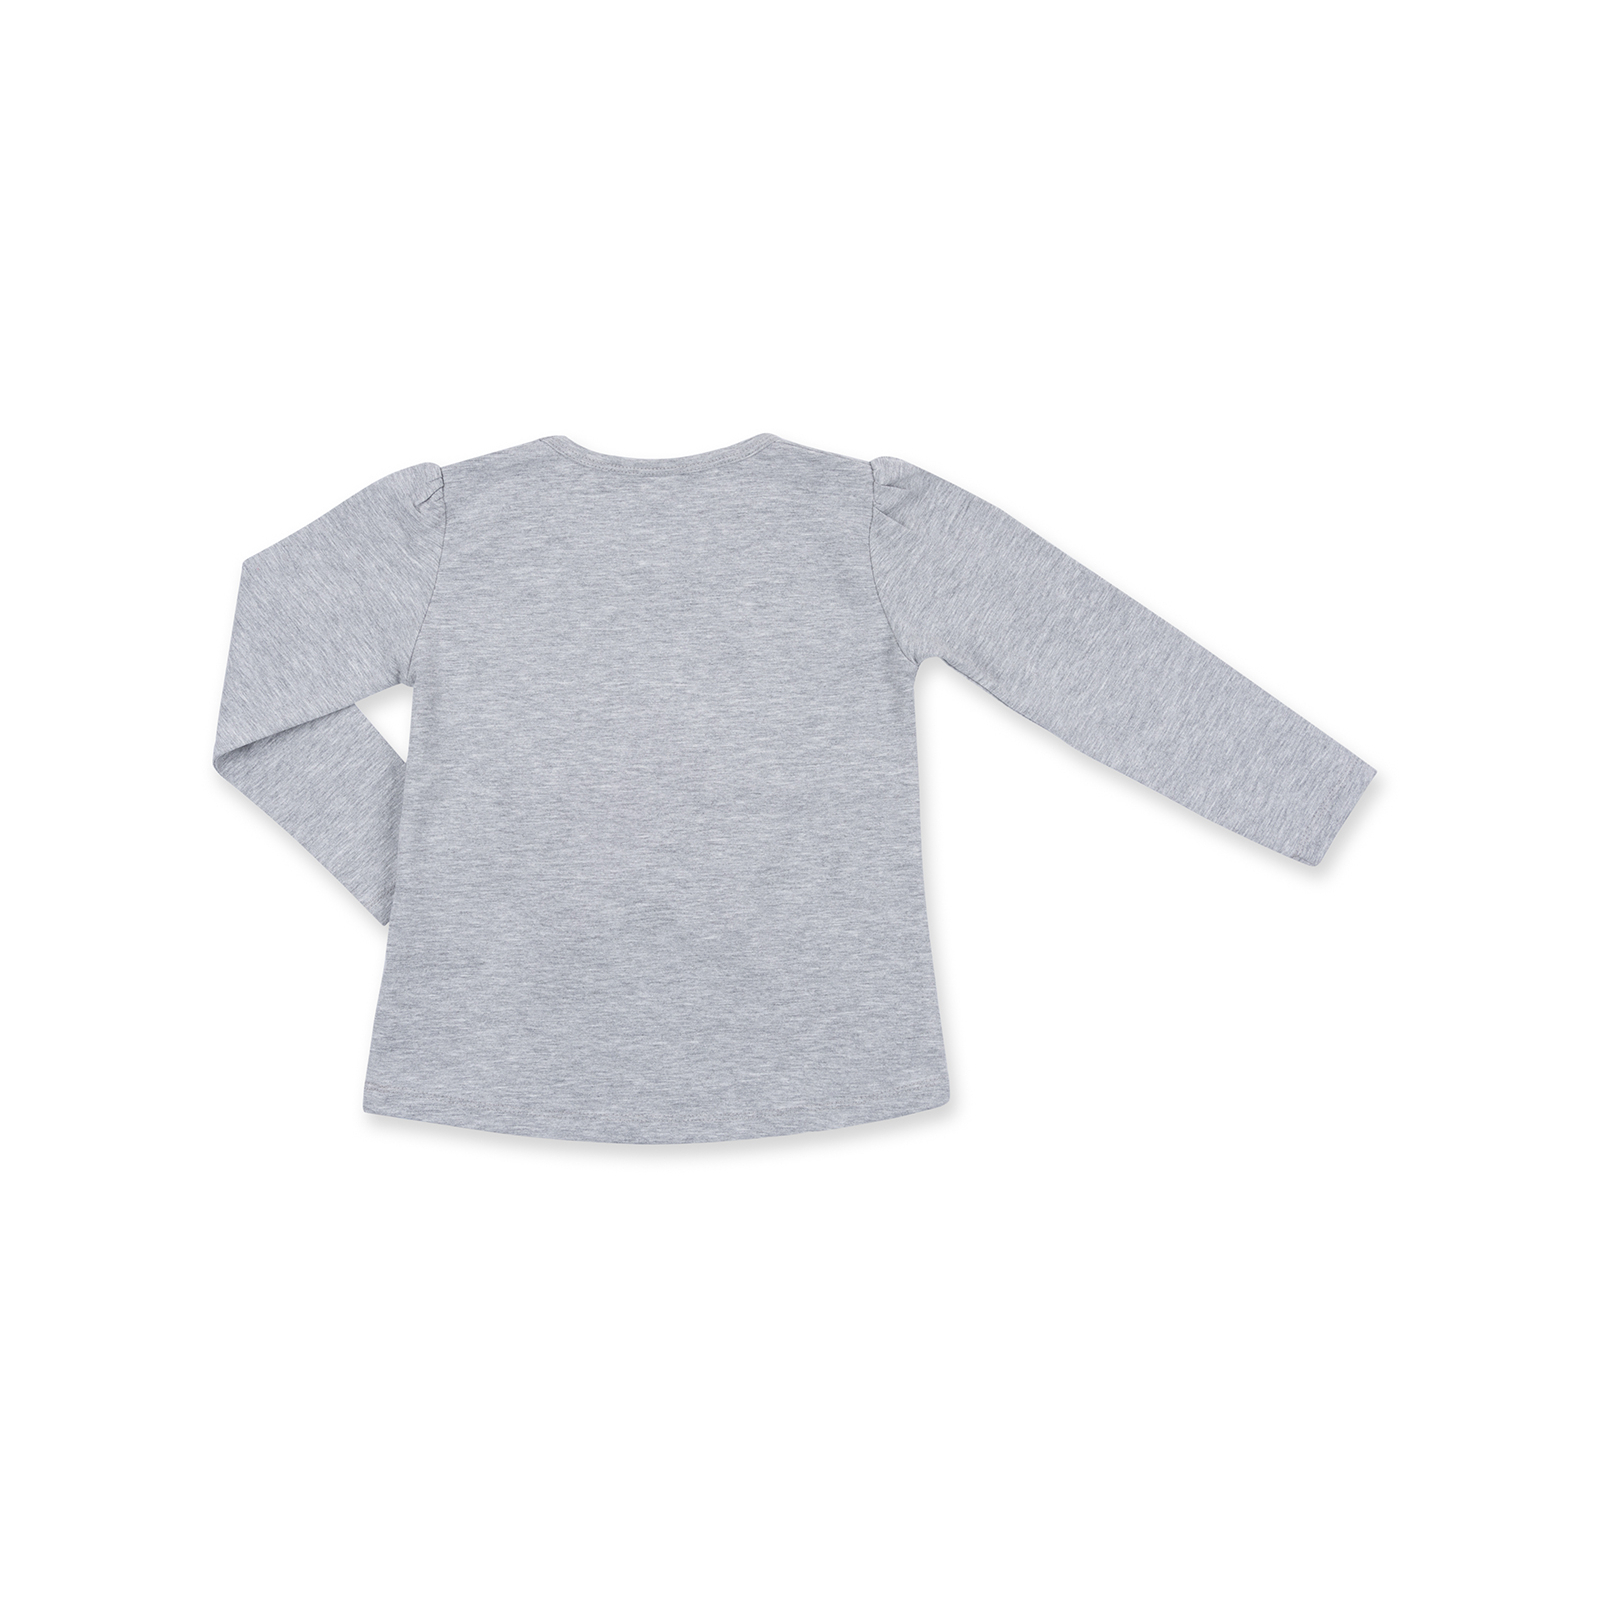 Набор детской одежды Breeze с объемной аппликацией (8401-104G-gray) изображение 4